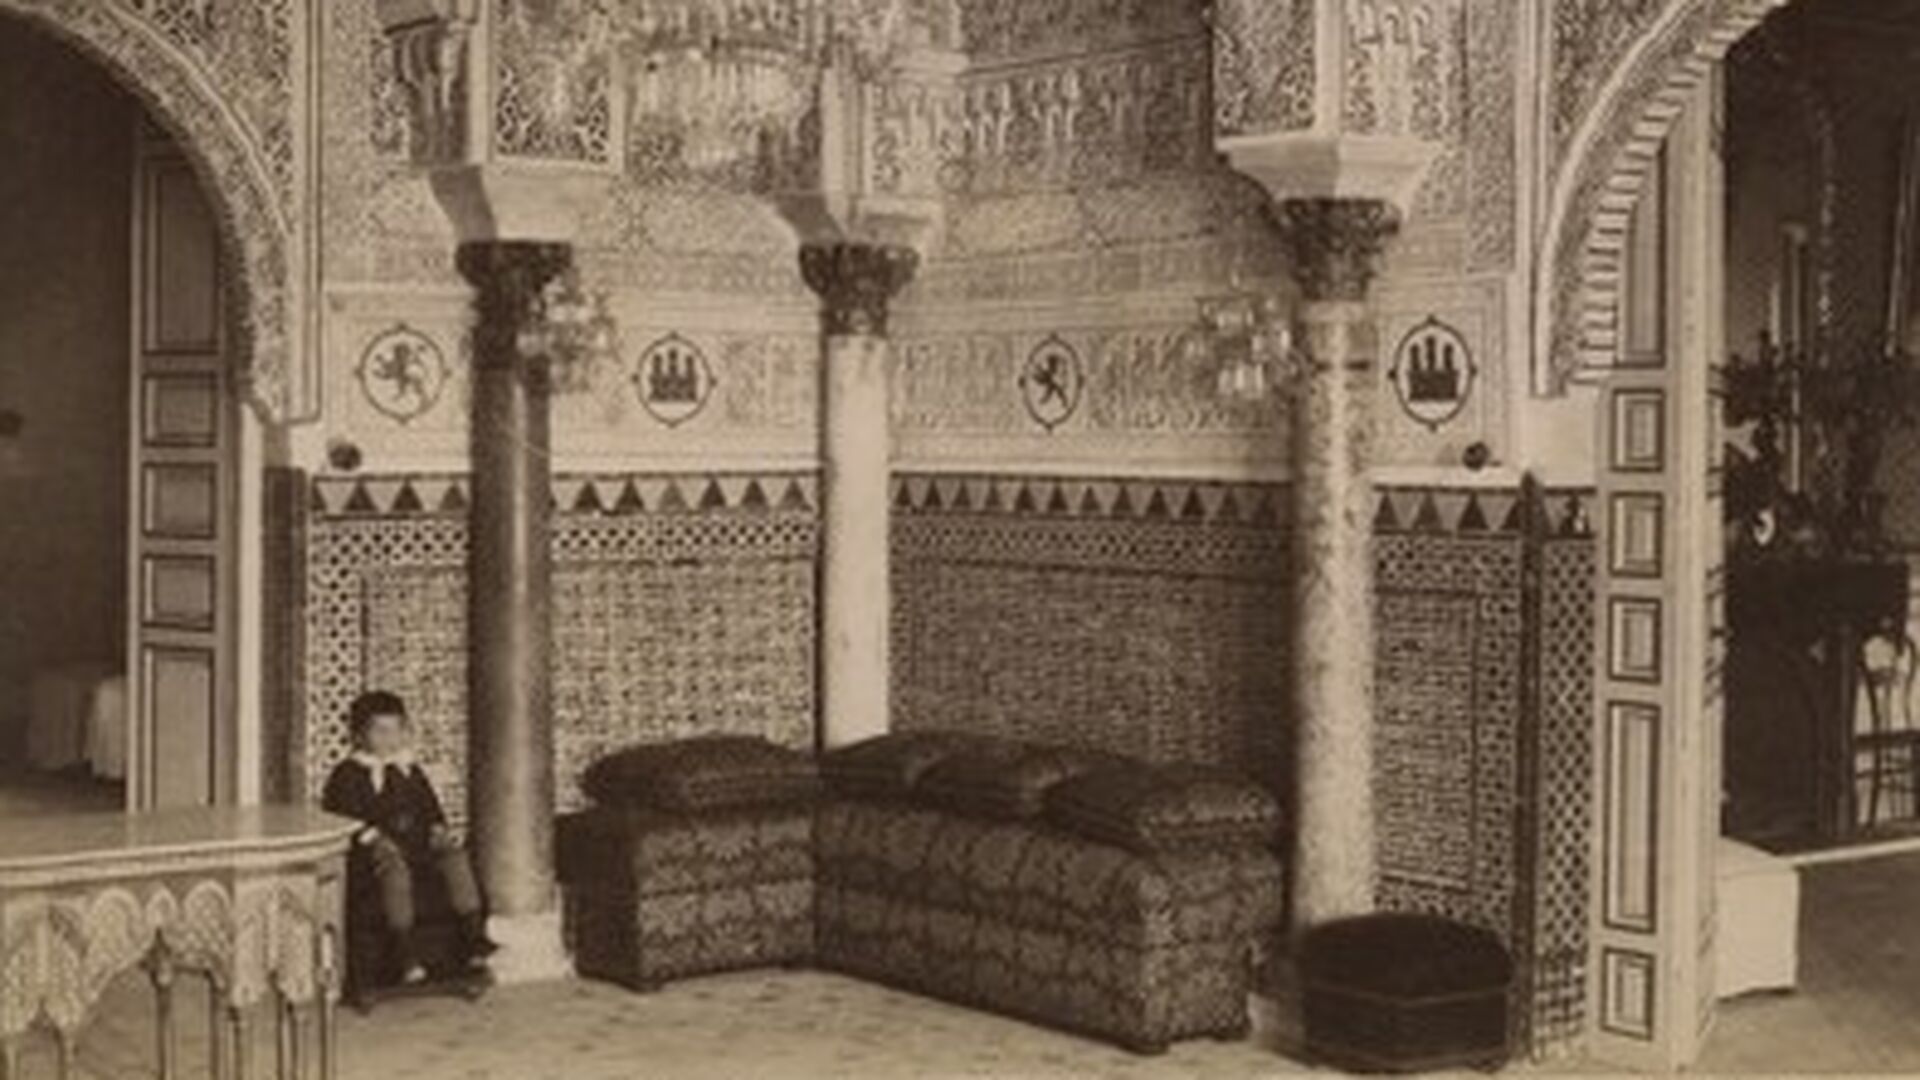 Sala de Audiencias o sal&oacute;n de Do&ntilde;a Mar&iacute;a de Padilla en el piso alto del palacio del rey don Pedro (880-1905).